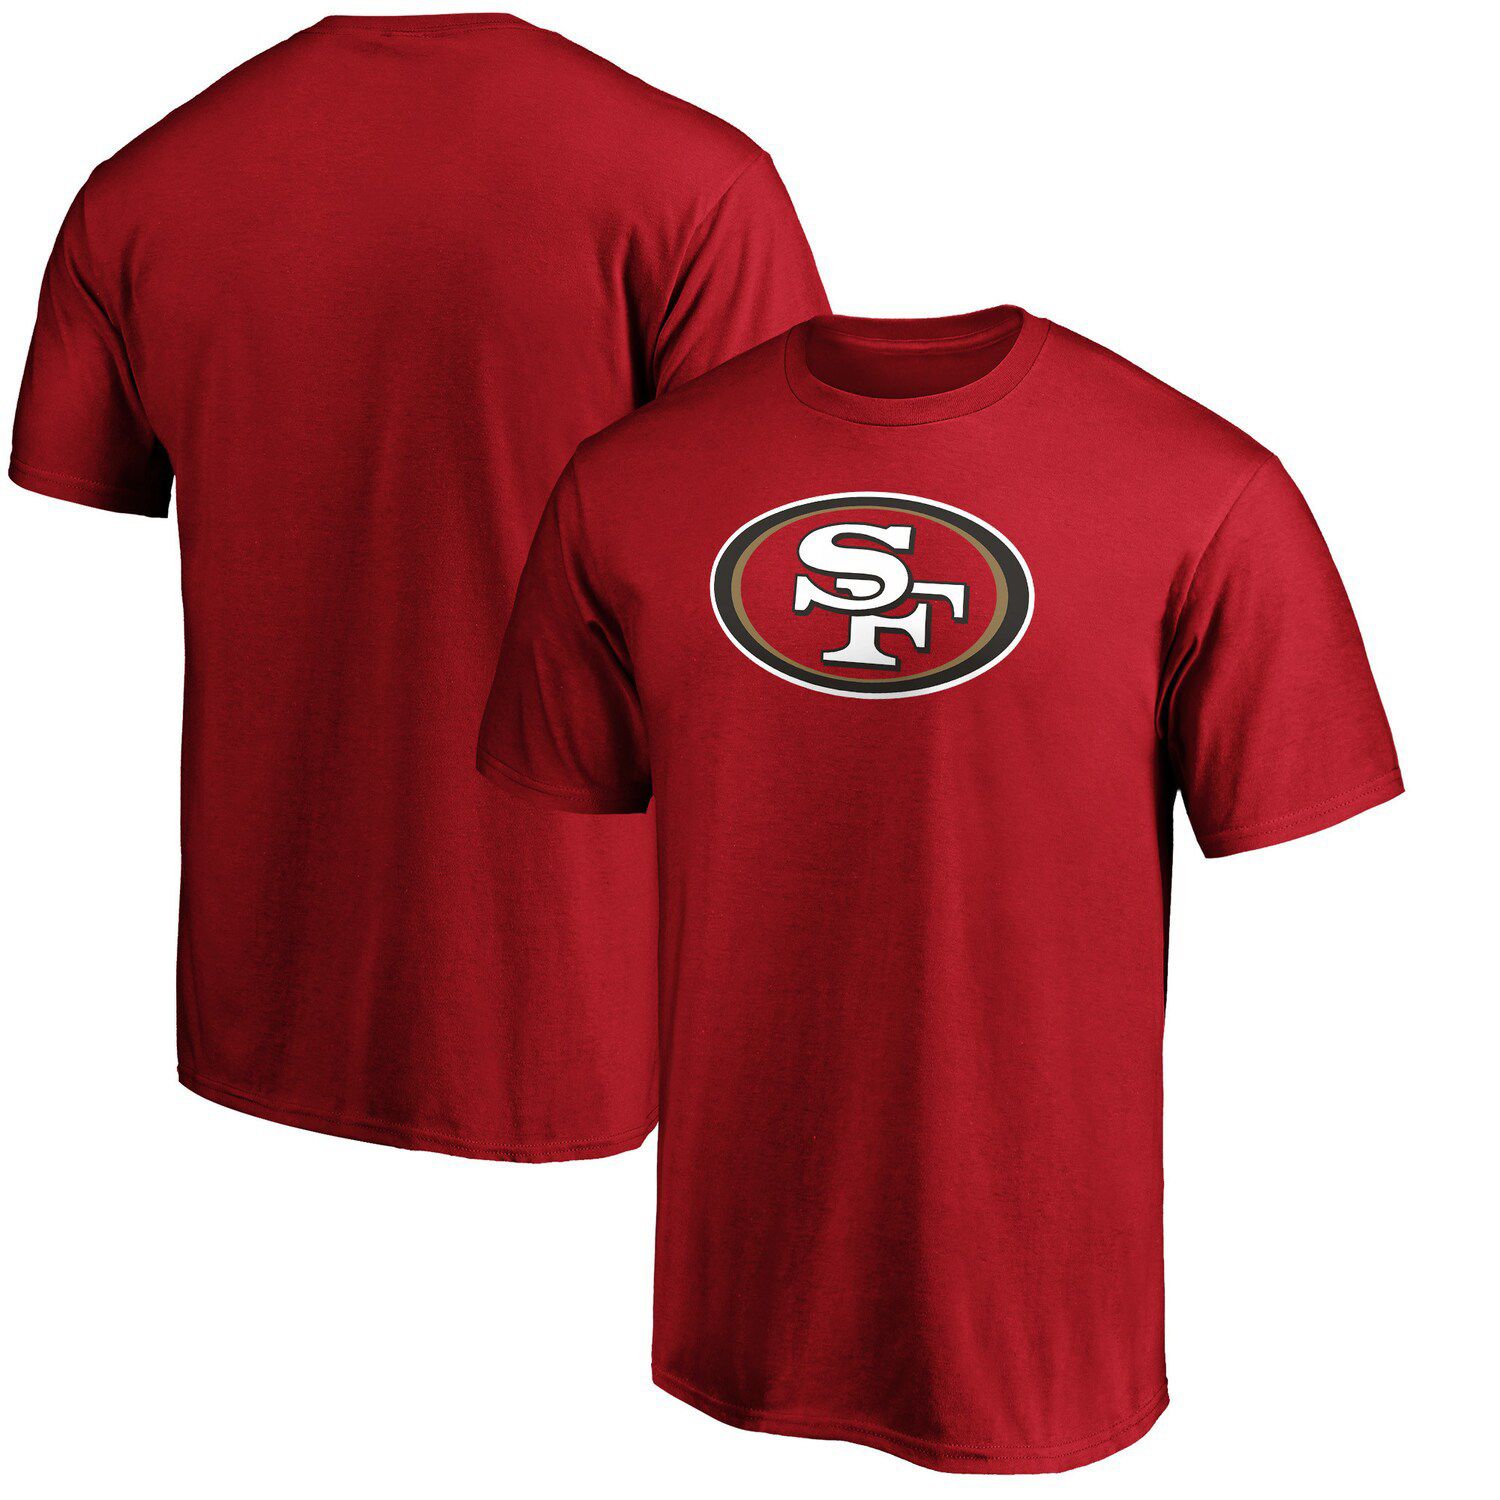 49ers t shirt jersey